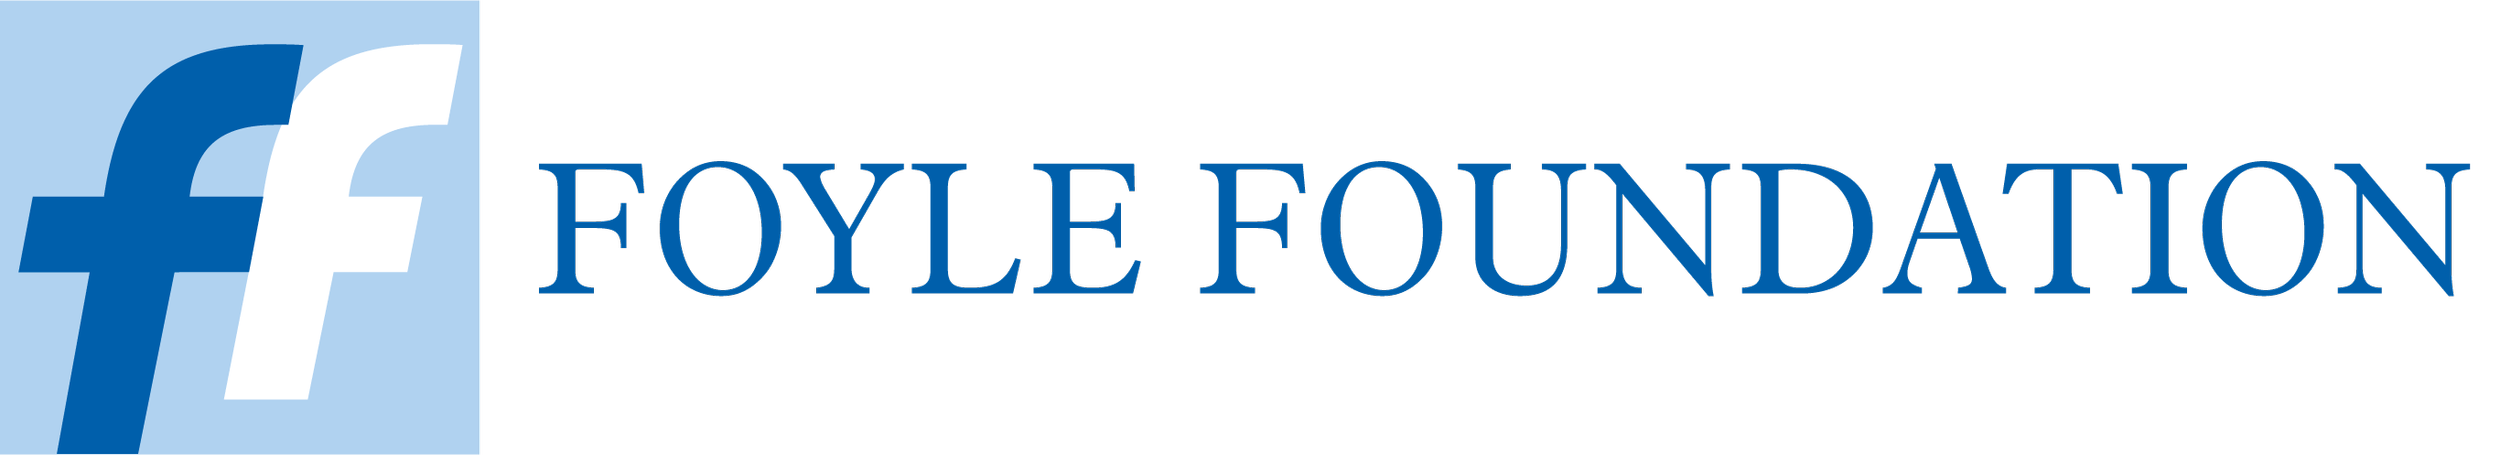 Foyle-Foundation-logo.png